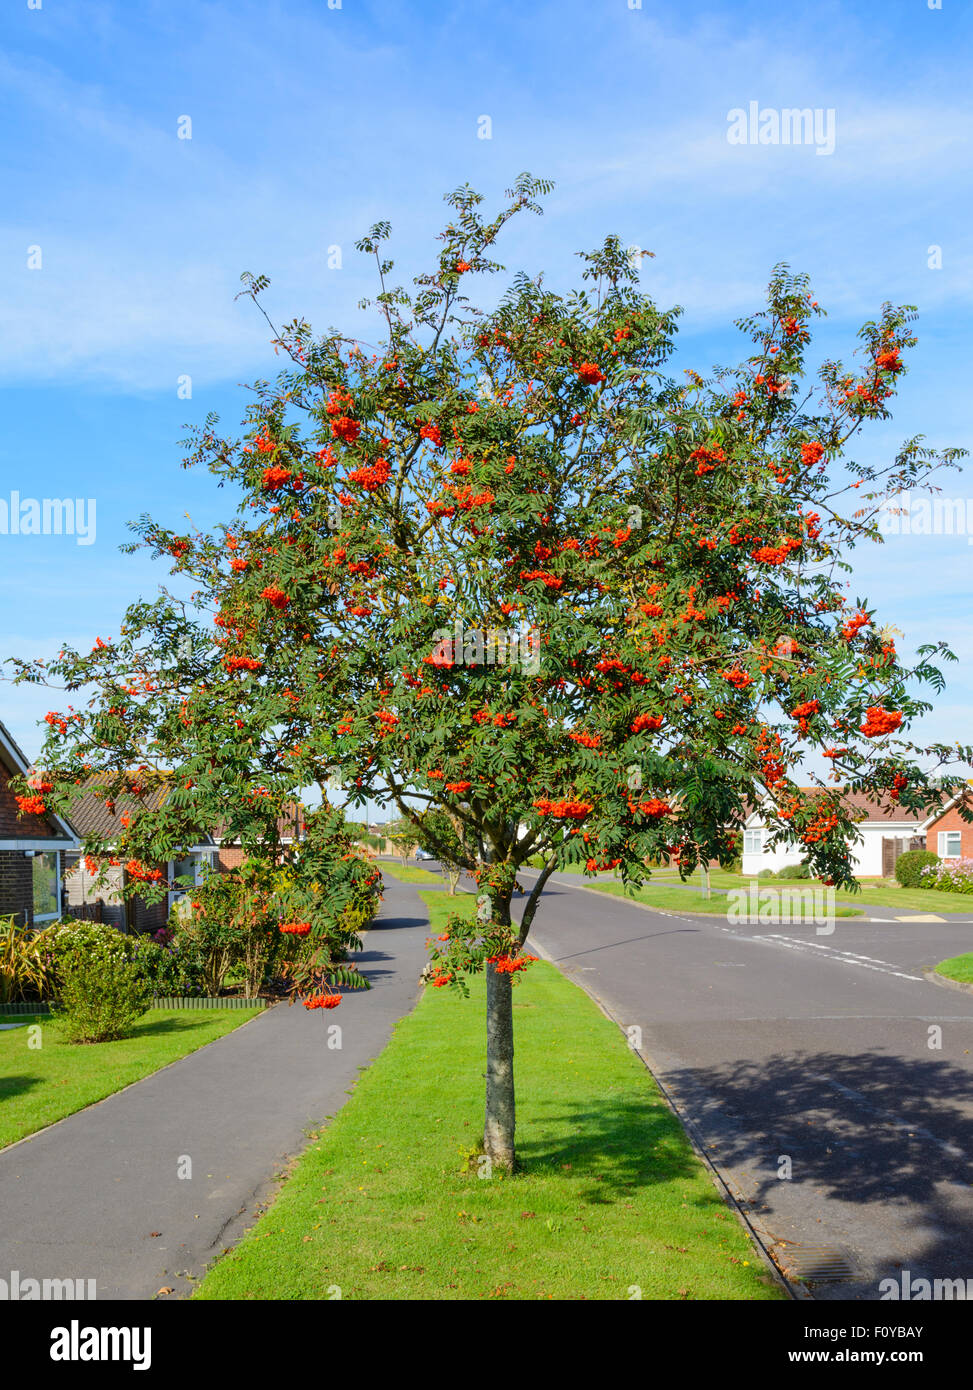 Sorbus aucuparia (Rowan tree, Mountain-Ash albero) dal lato della strada in una zona residenziale in Inghilterra, Regno Unito. Foto Stock